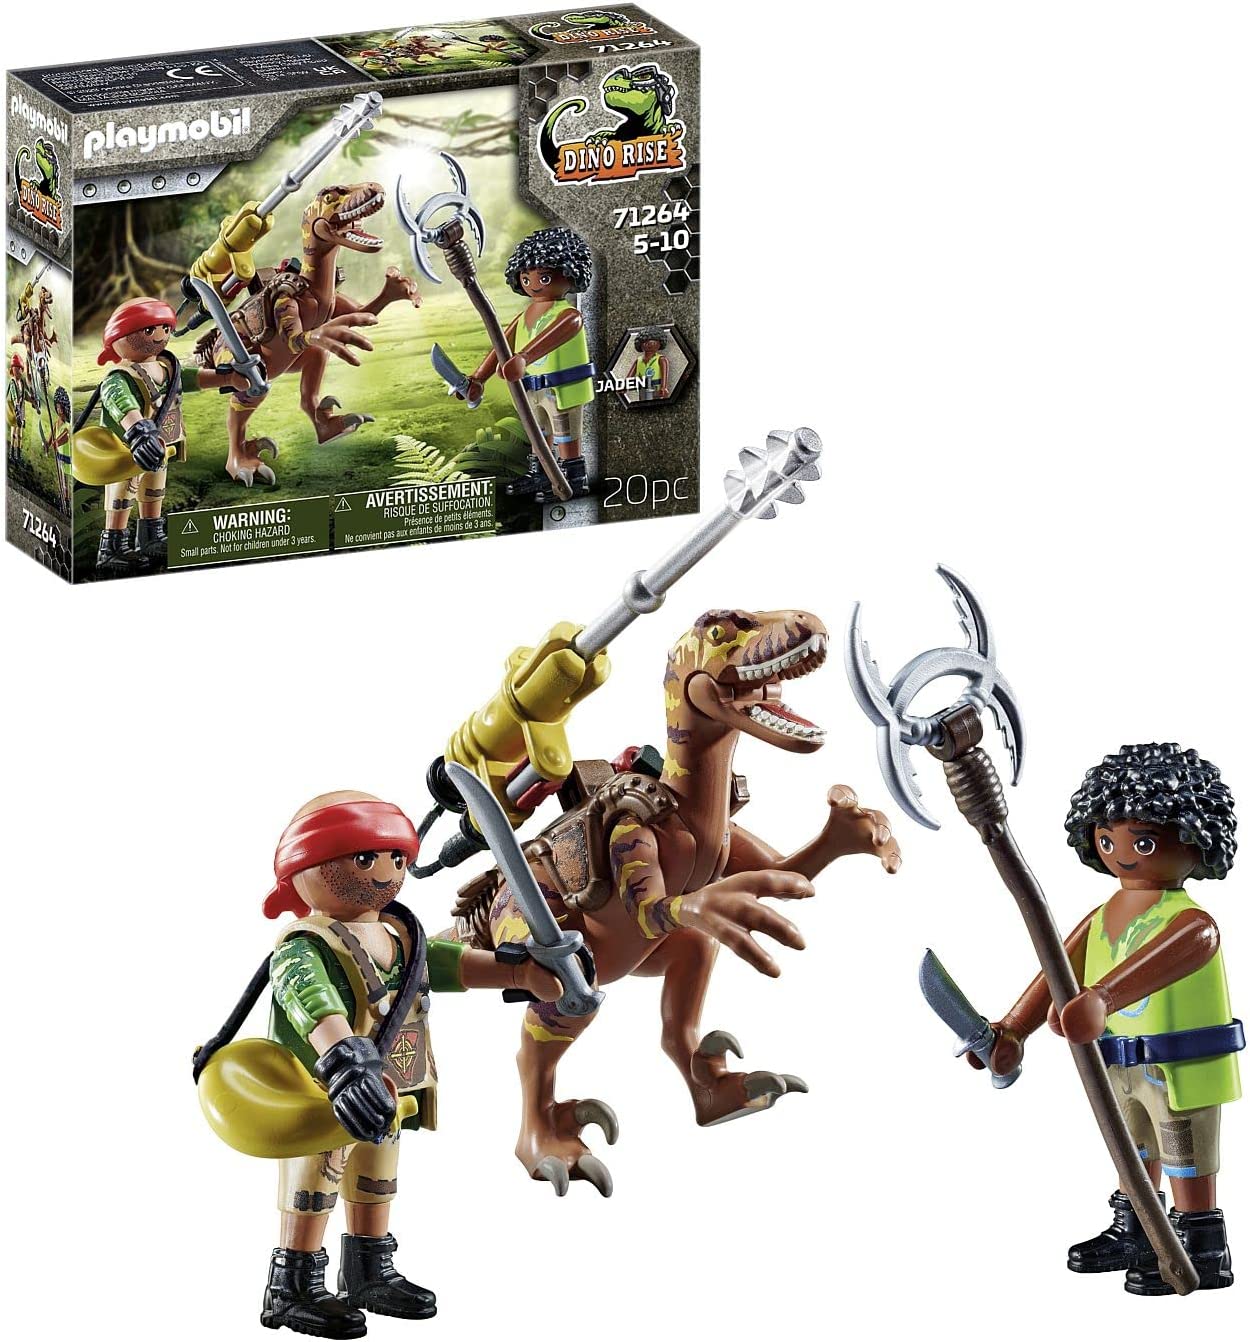 PLAYMOBIL Dino Rise 71264 Deinonychus, Dinosaurier mit Abnehmbarer, schwenkbarer Kanone, Spielzeug für Kinder ab 5 Jahren